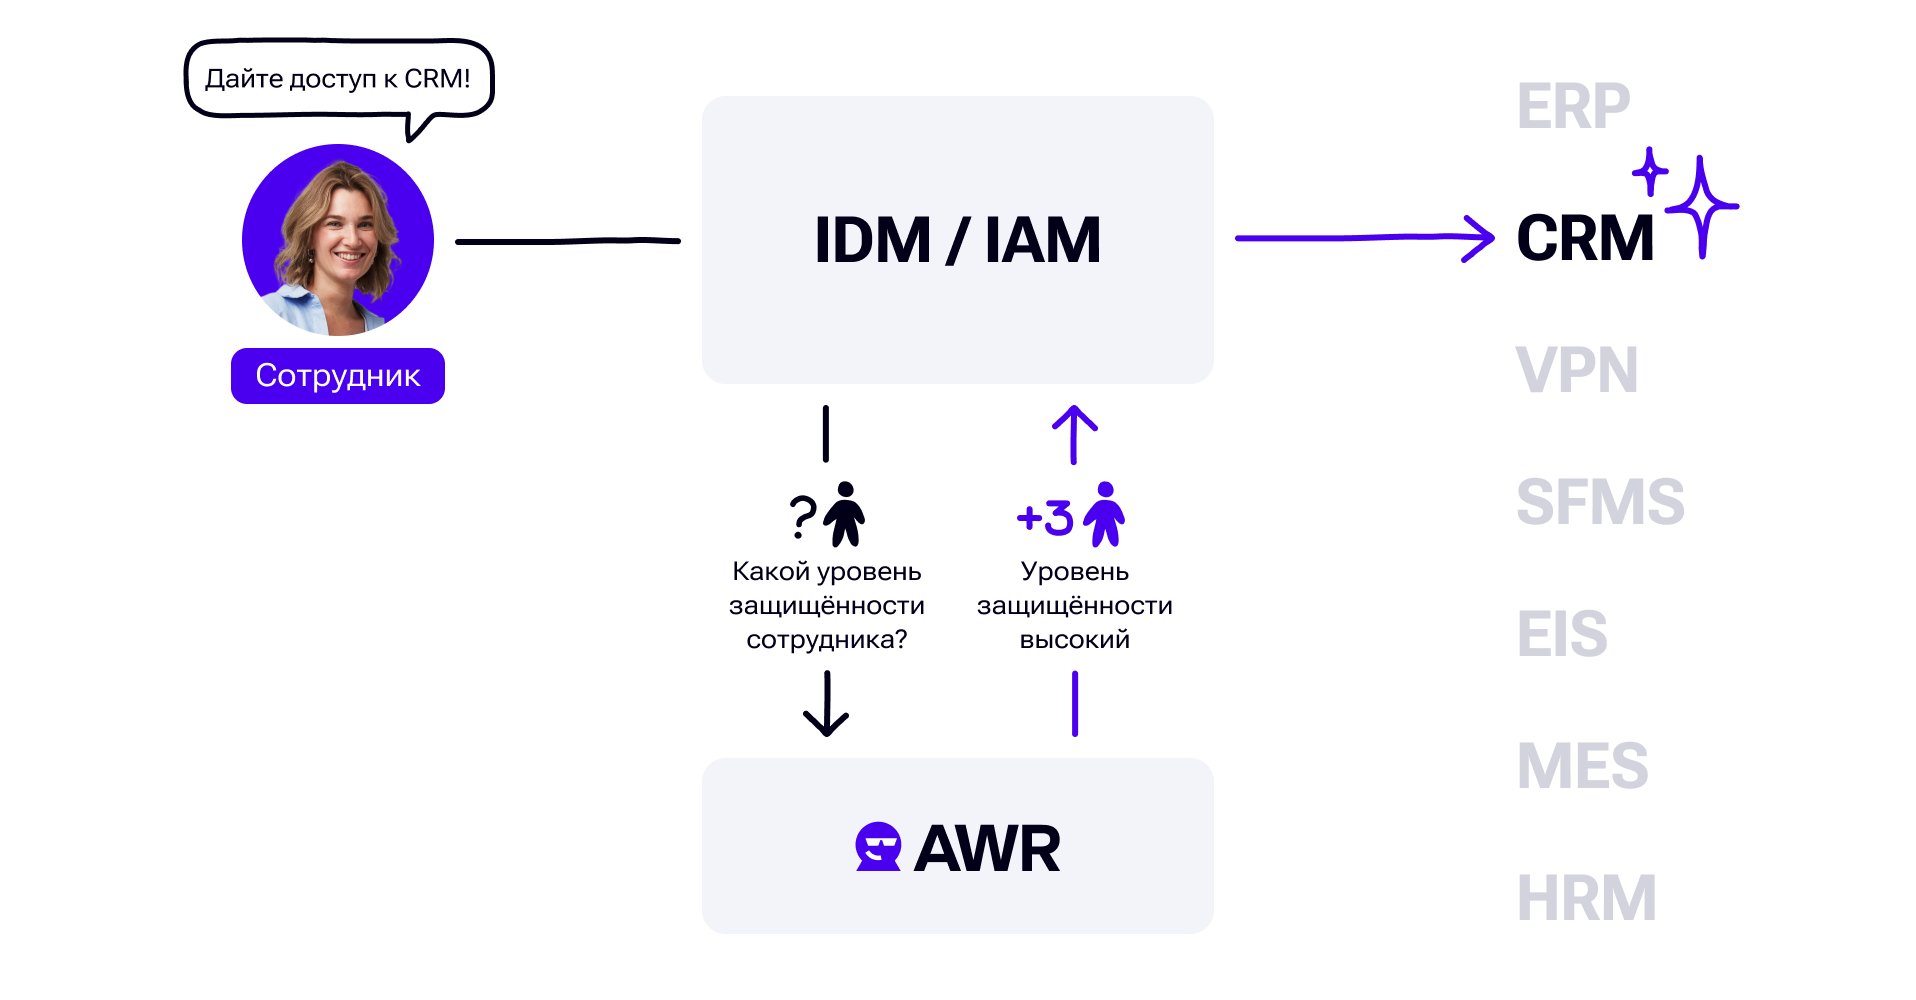 Наглядный пример интеграции концепции People as Code с процессами IDM/AIM — уровень защищенности сотрудника достаточный для выдачи доступа